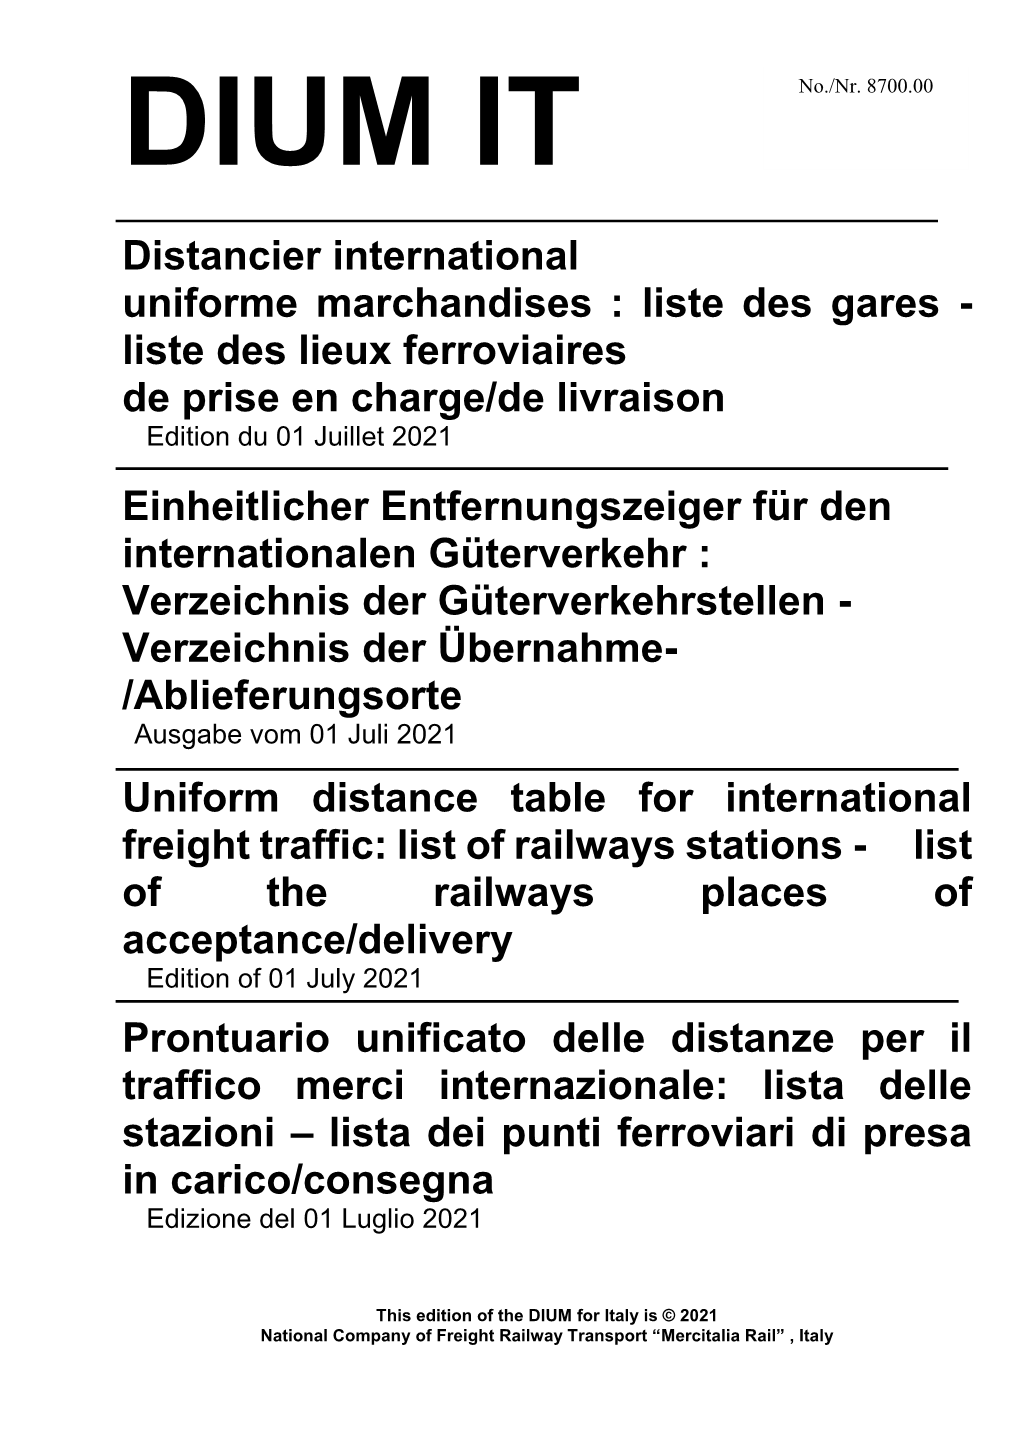 Distancier International Uniforme Marchandises : Liste Des Gares - Liste Des Lieux Ferroviaires De Prise En Charge/De Livraison Edition Du 01 Juillet 2021